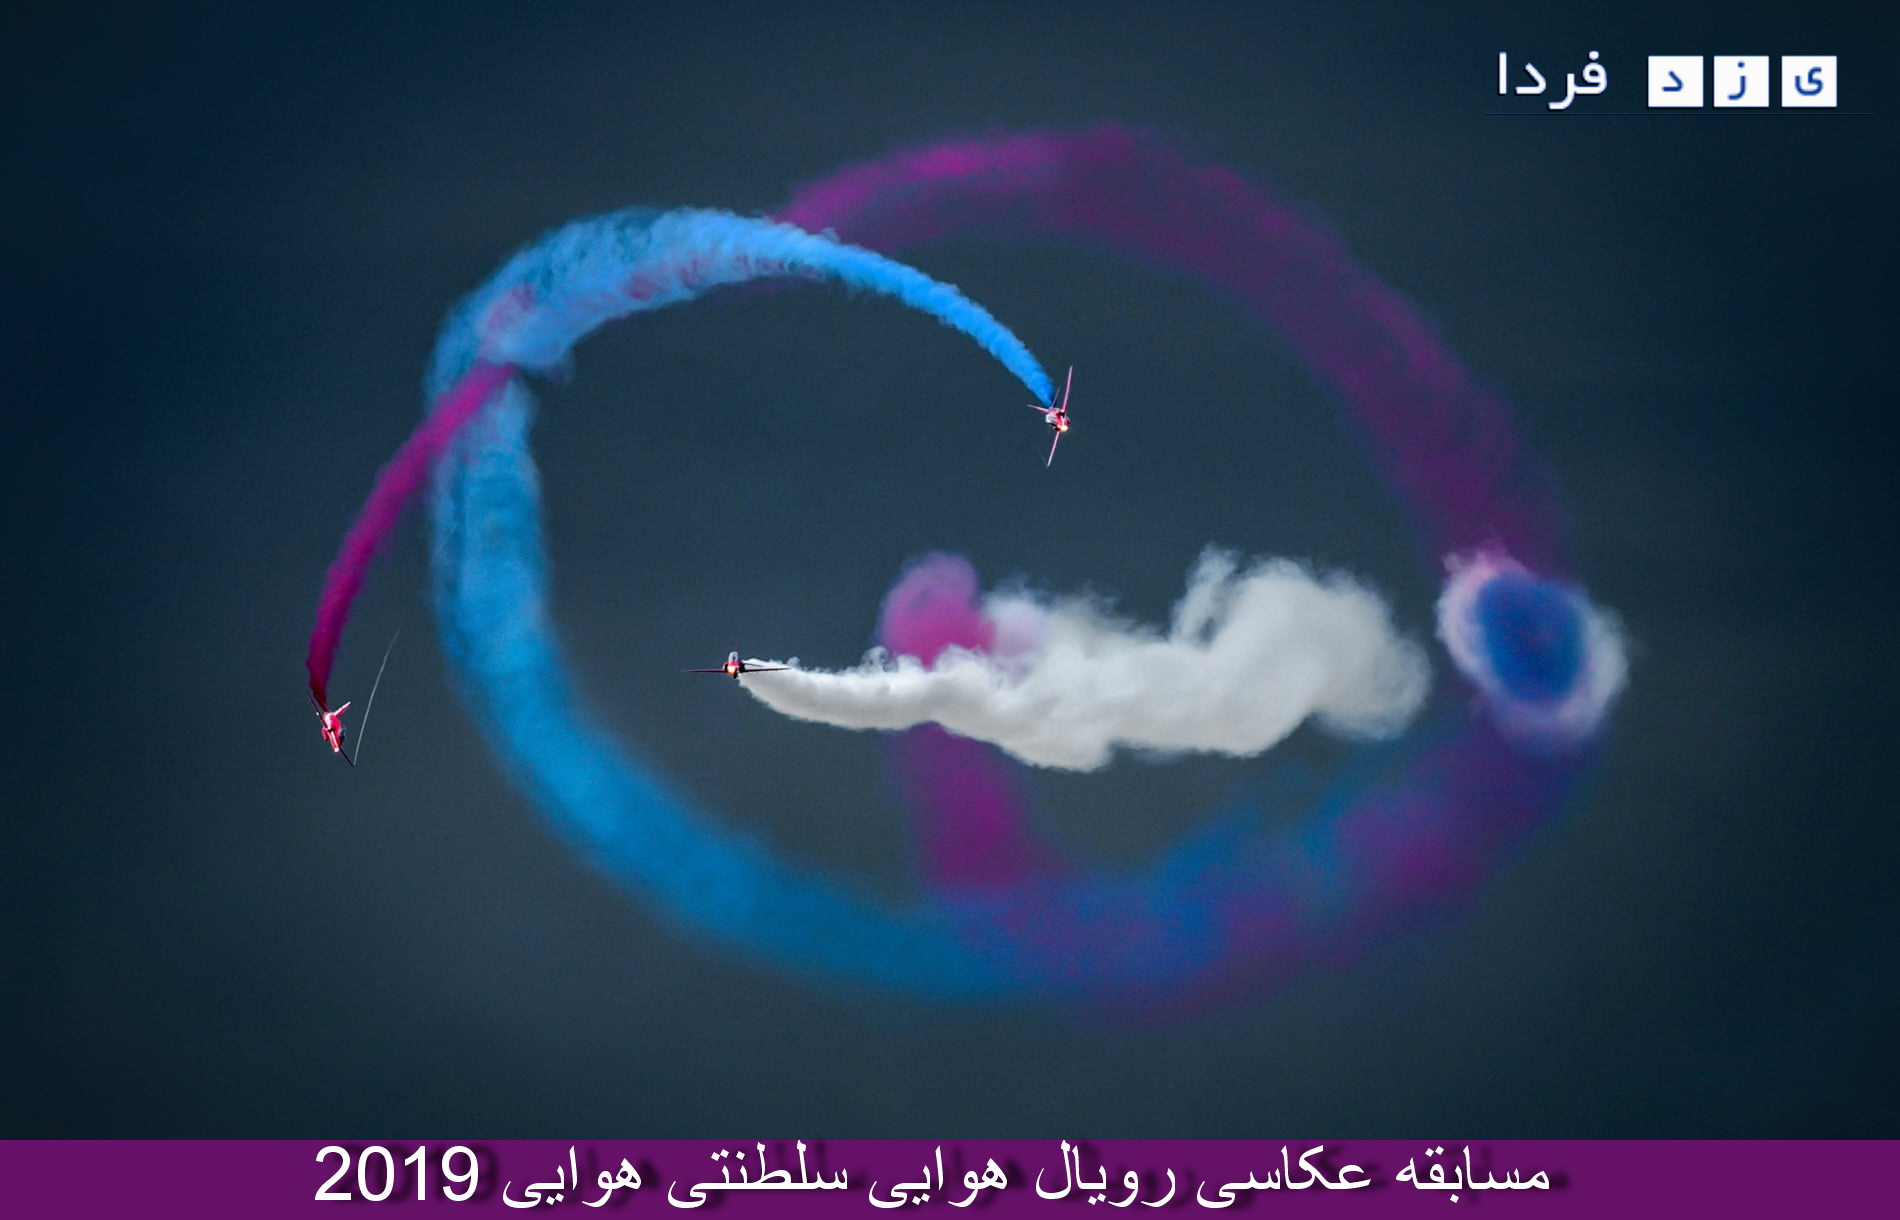 تصاویر زیبای مسابقه عکاسی رویال هوایی سلطنتی هوایی 2019 +توضیحات ونام عکاس